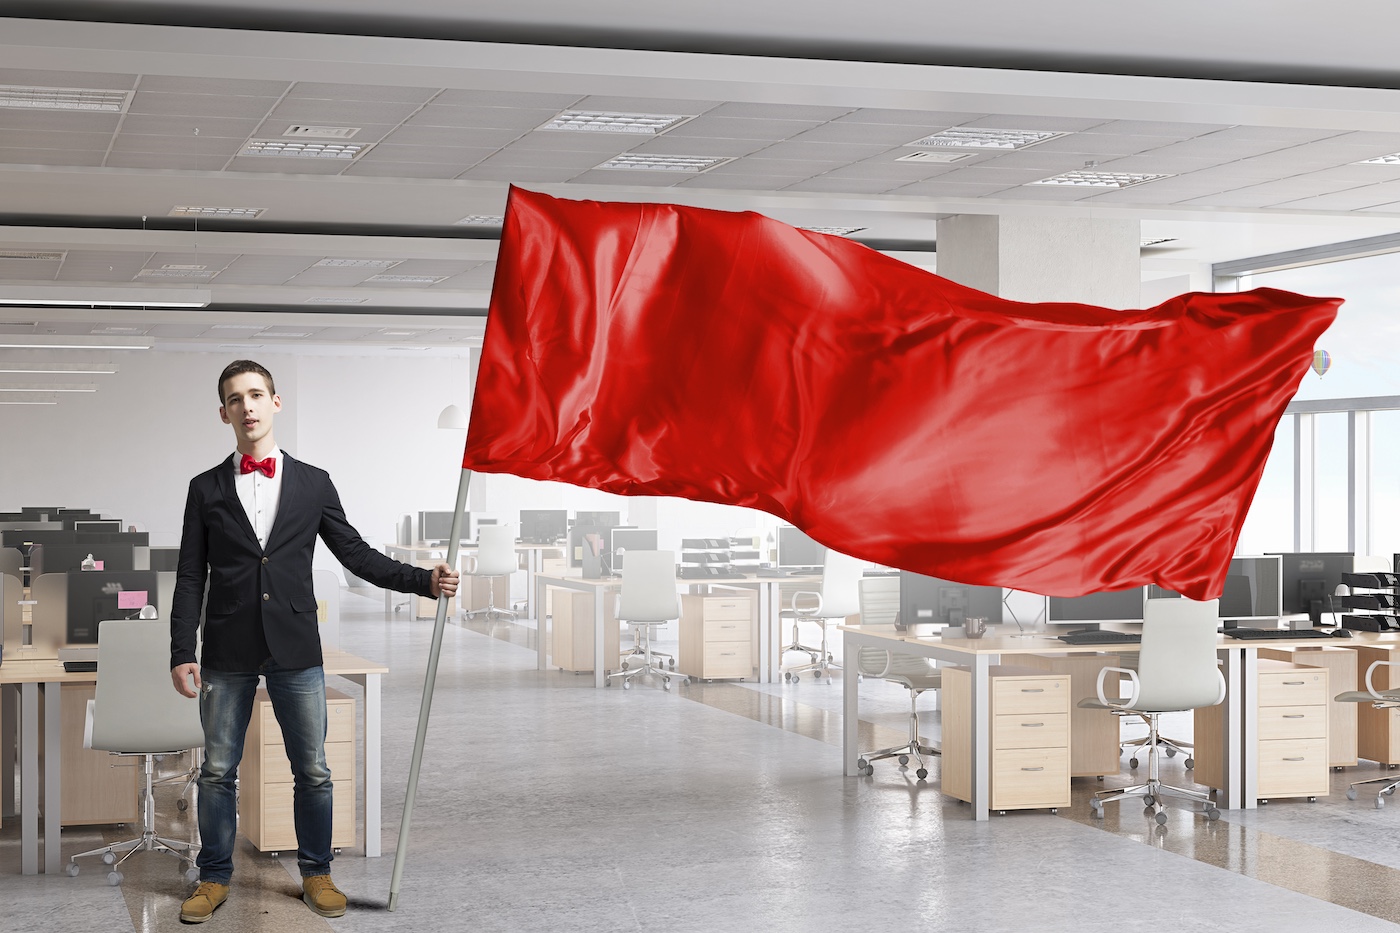 Man zwaaiende rode vlag waarschuwing bij leeg technologiebedrijf